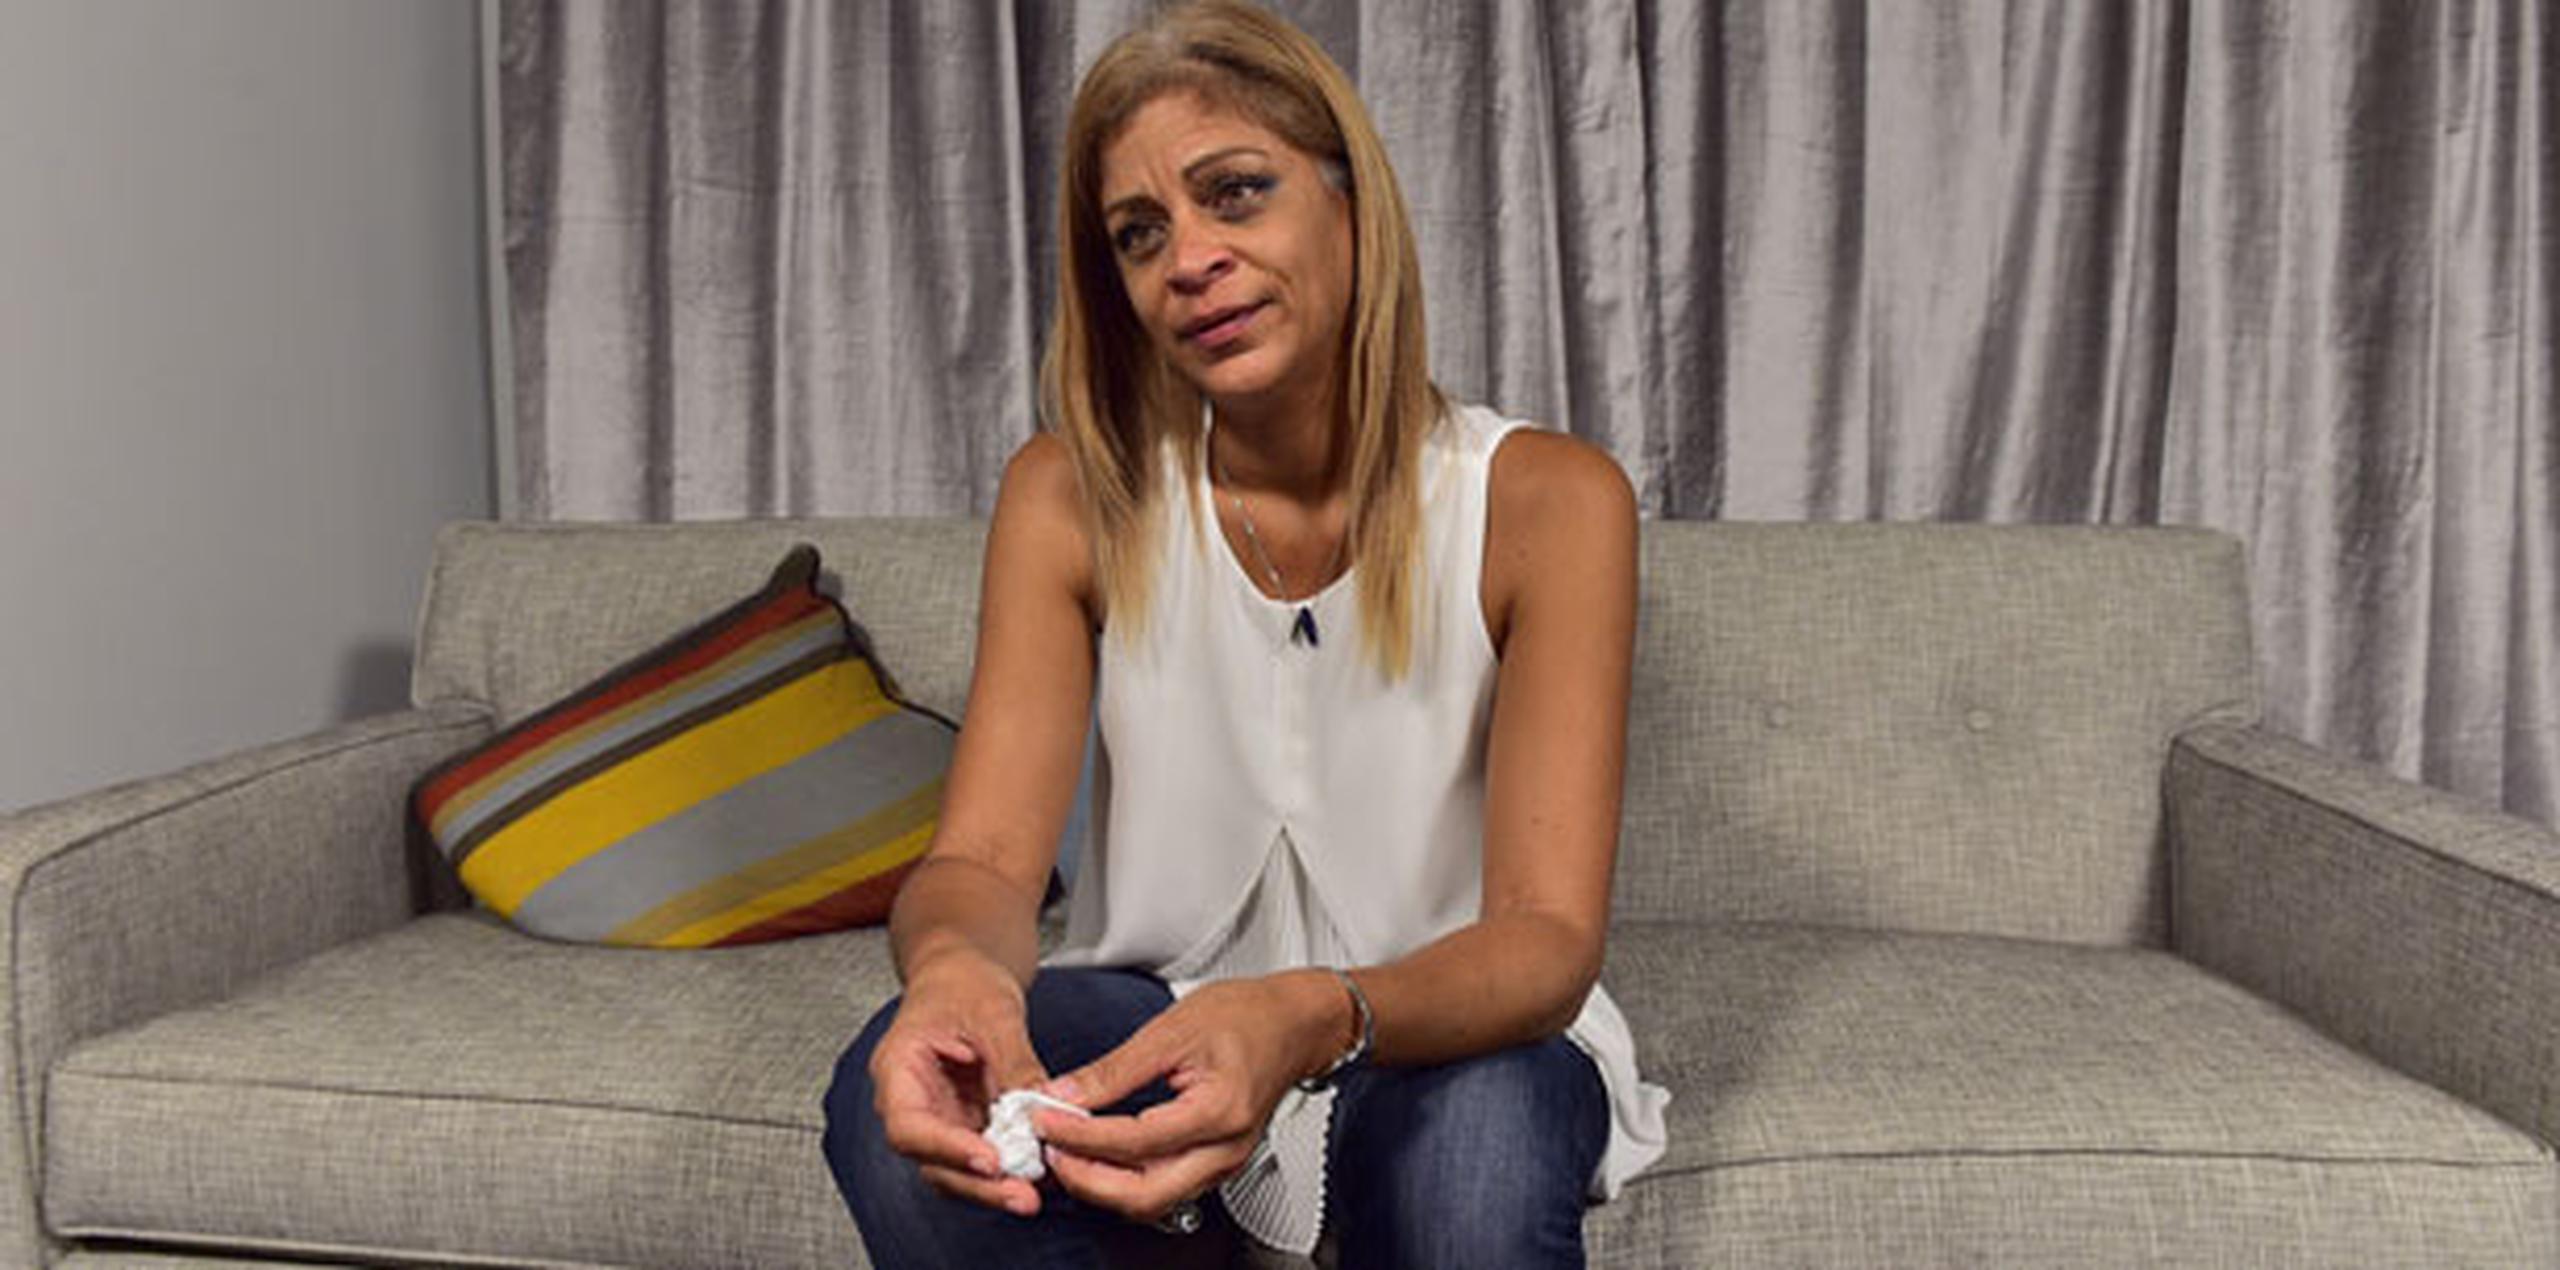 Maricela Laureano tenía 24 años cuando ocurrió la explosión. Recordar el incidente dos décadas después le provoca tristeza. (tony.zayas@gfrmedia.com)